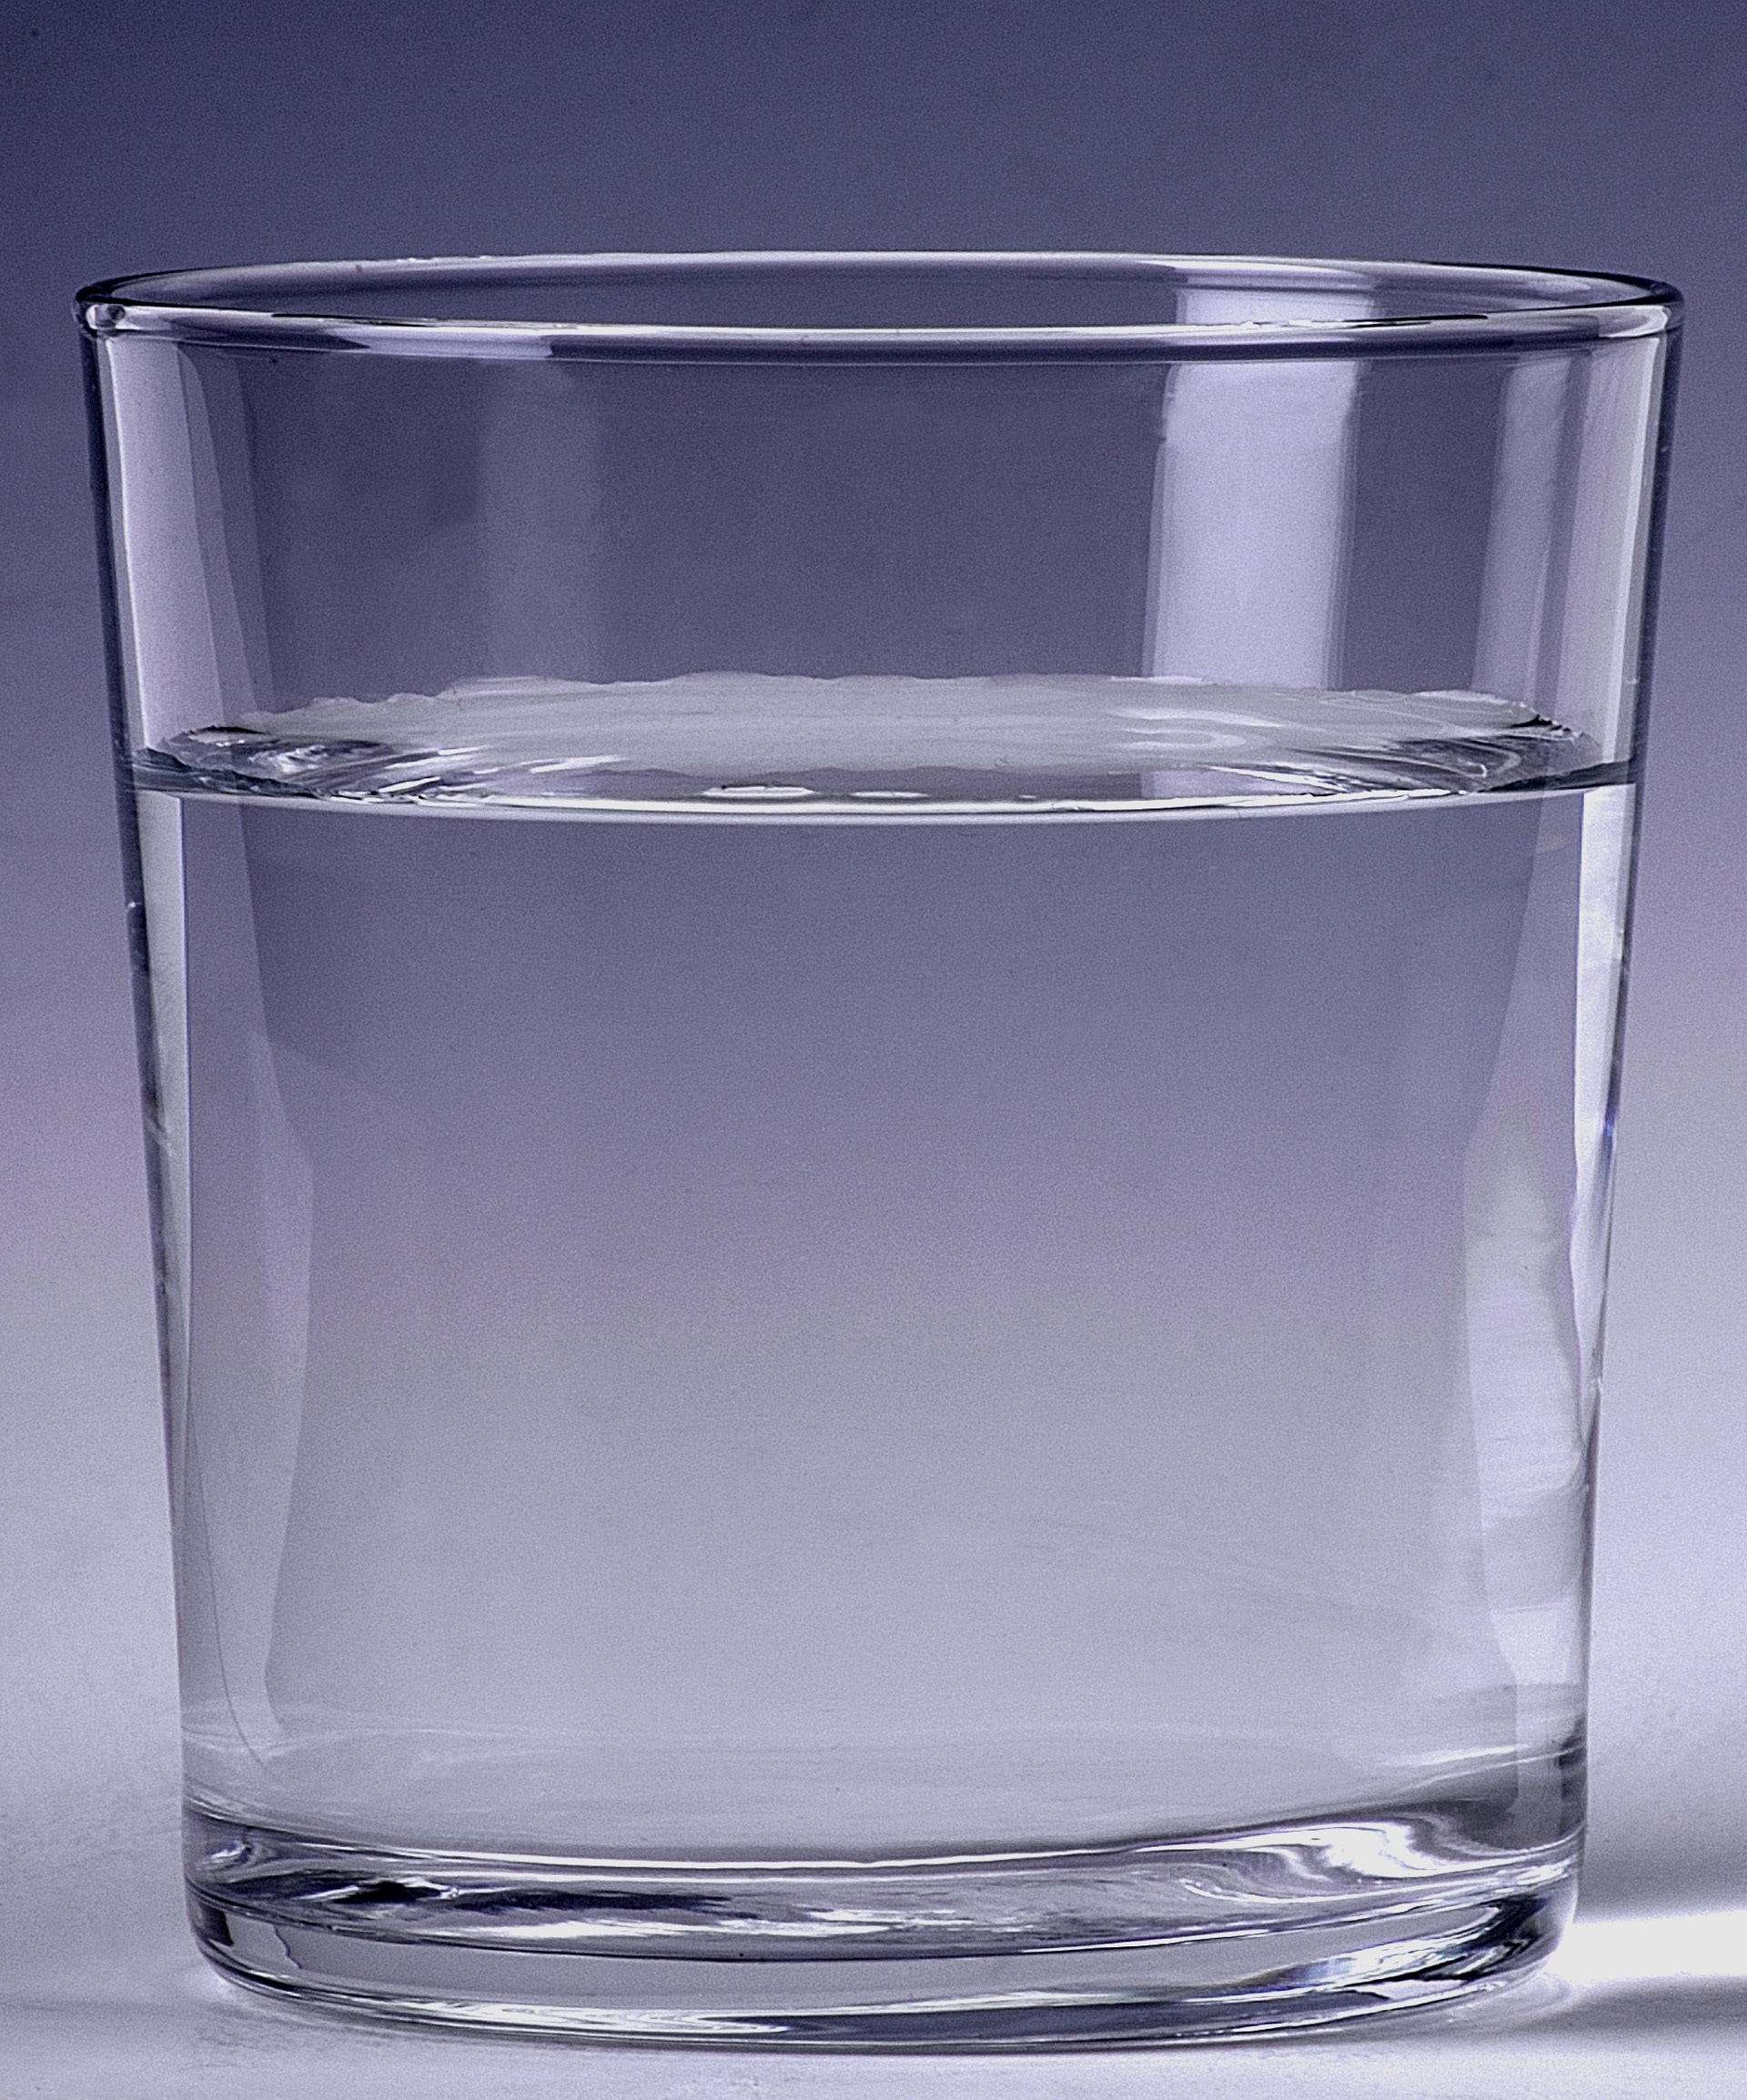 Стакан воды для исполнения. Стакан воды. Прозрачная жидкость. Прозрачный стакан. Стакан стеклянный.